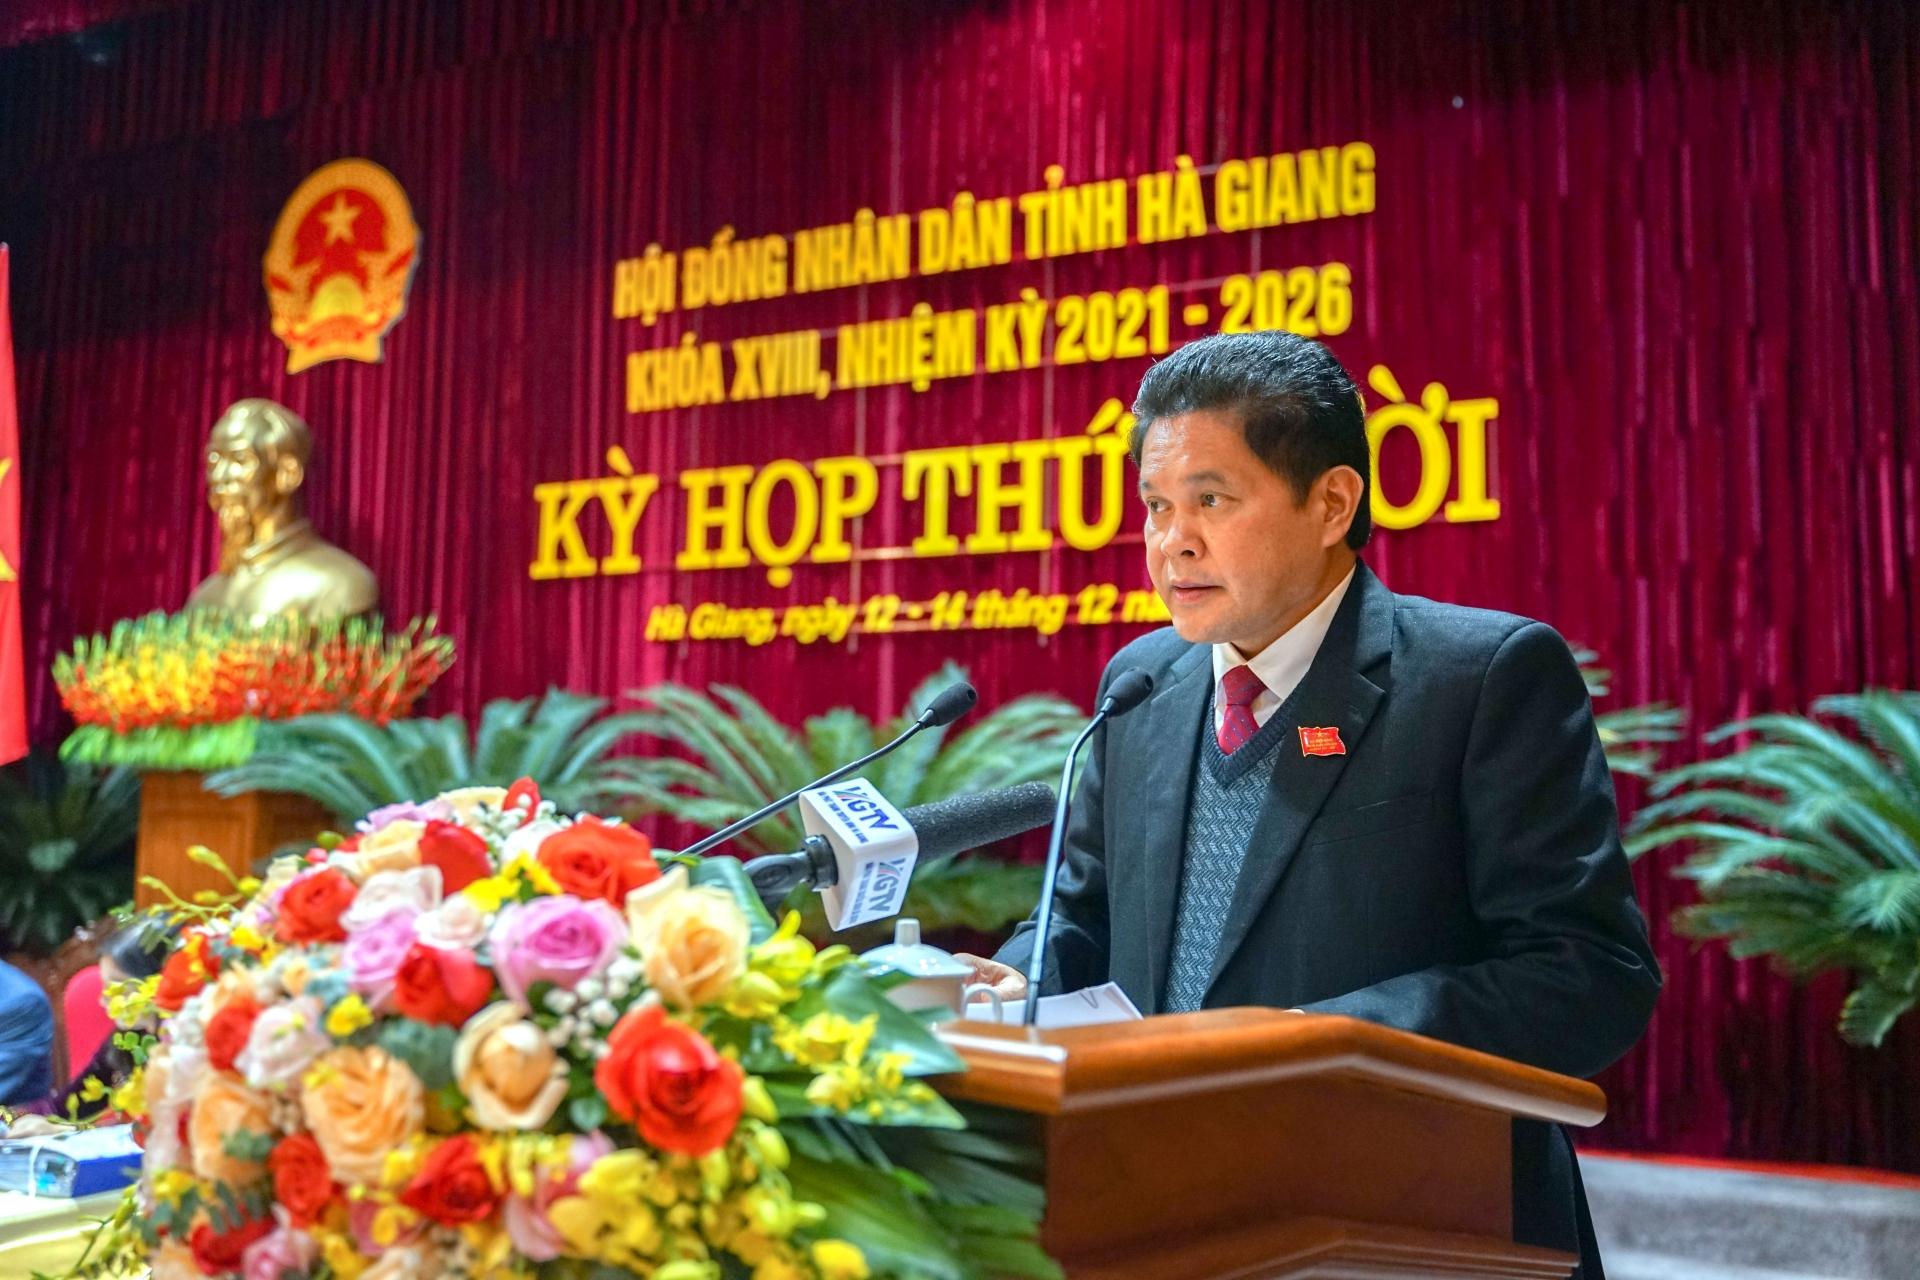 Chủ tịch Ủy ban MTTQ tỉnh Vàng Seo Cón thông báo về công tác tham gia xây dựng chính quyền năm 2022; tổng hợp ý kiến, kiến nghị của cử tri và Nhân dân gửi kỳ họp.